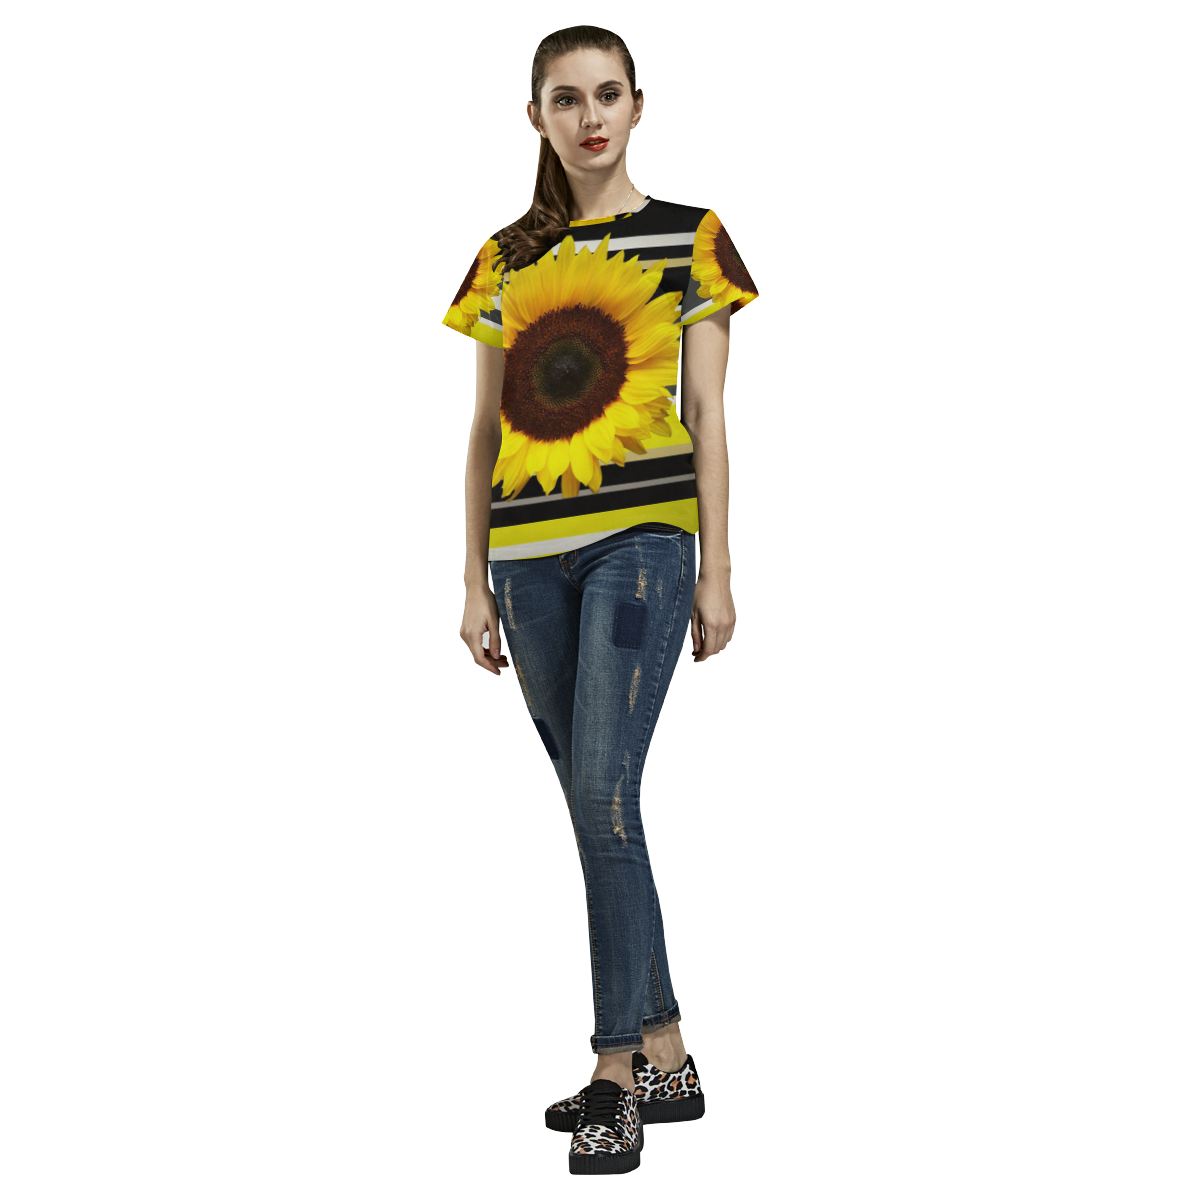 Sunflower All Over Print T-Shirt for Women (USA Size) (Model T40)